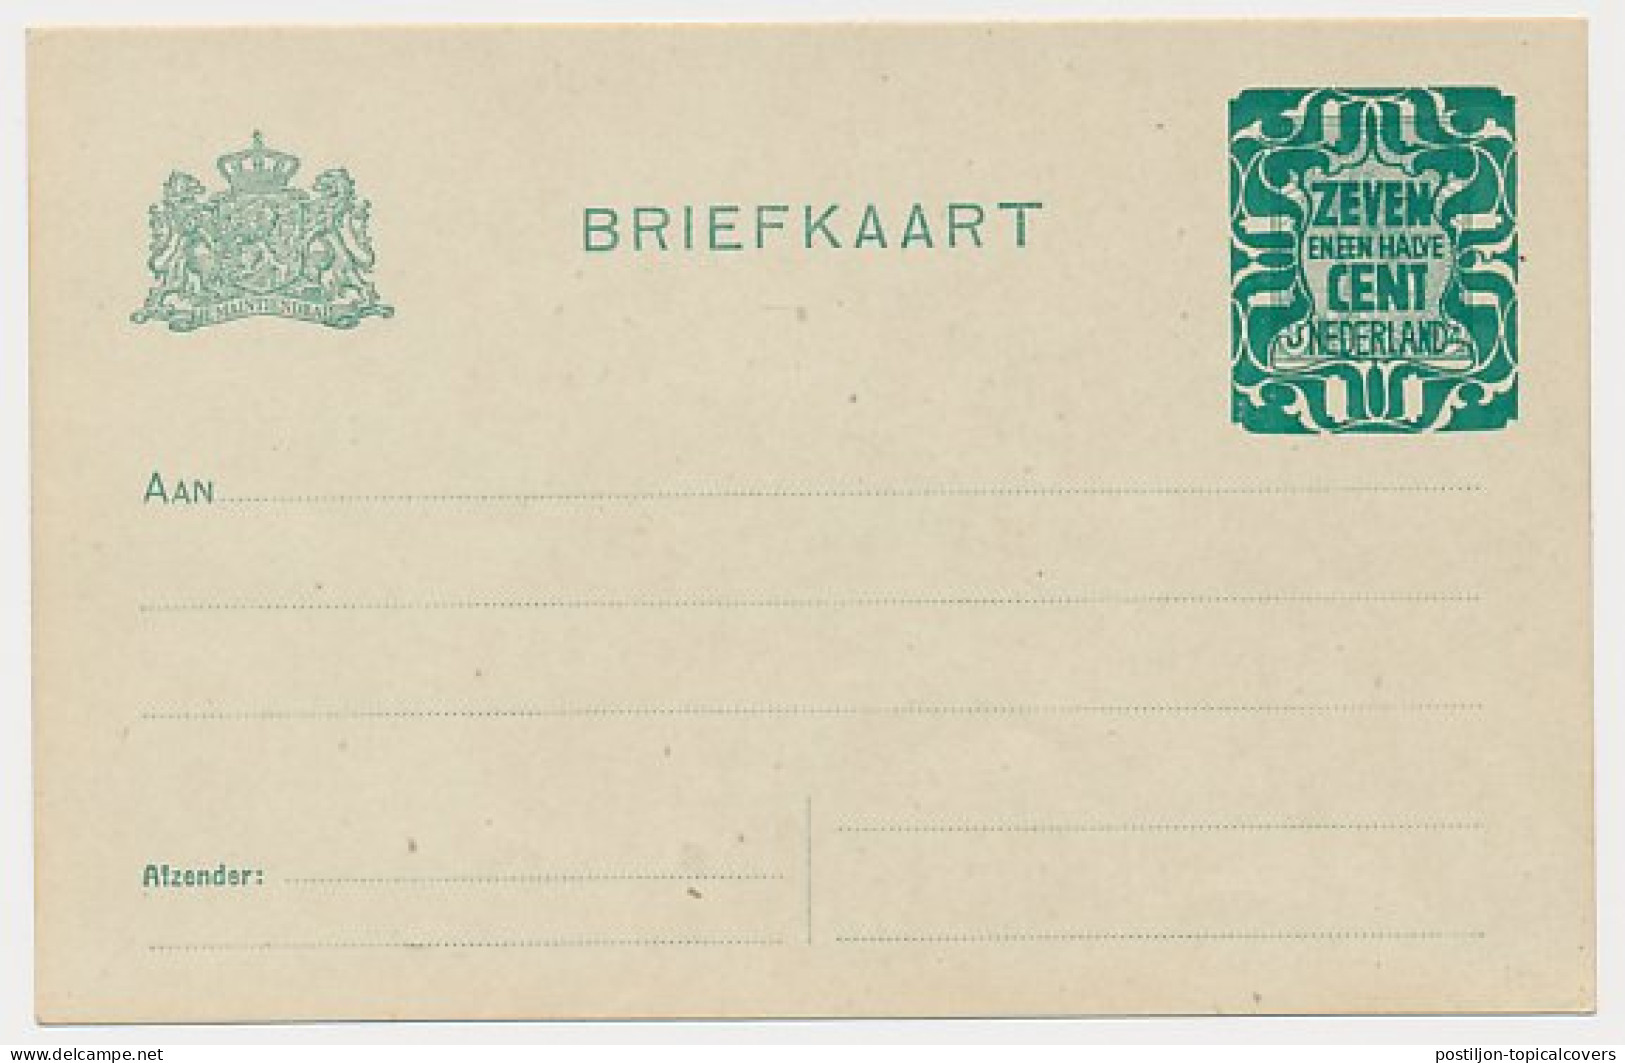 Briefkaart G. 168 A II - Postwaardestukken